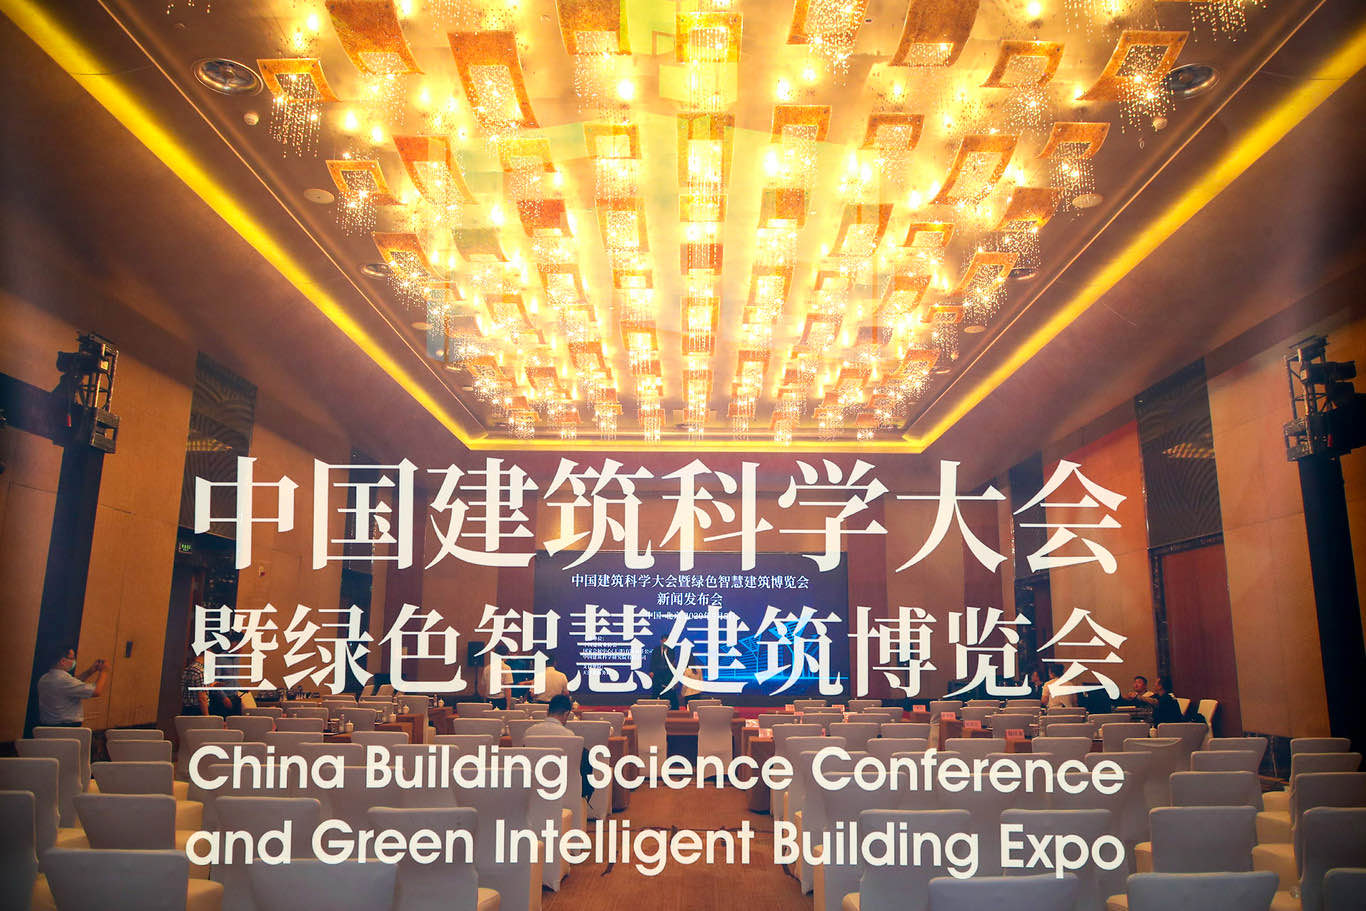 国家会展中心(天津)首展——中国建筑科学大会暨绿色智慧建筑博览会将于2021年6月举办